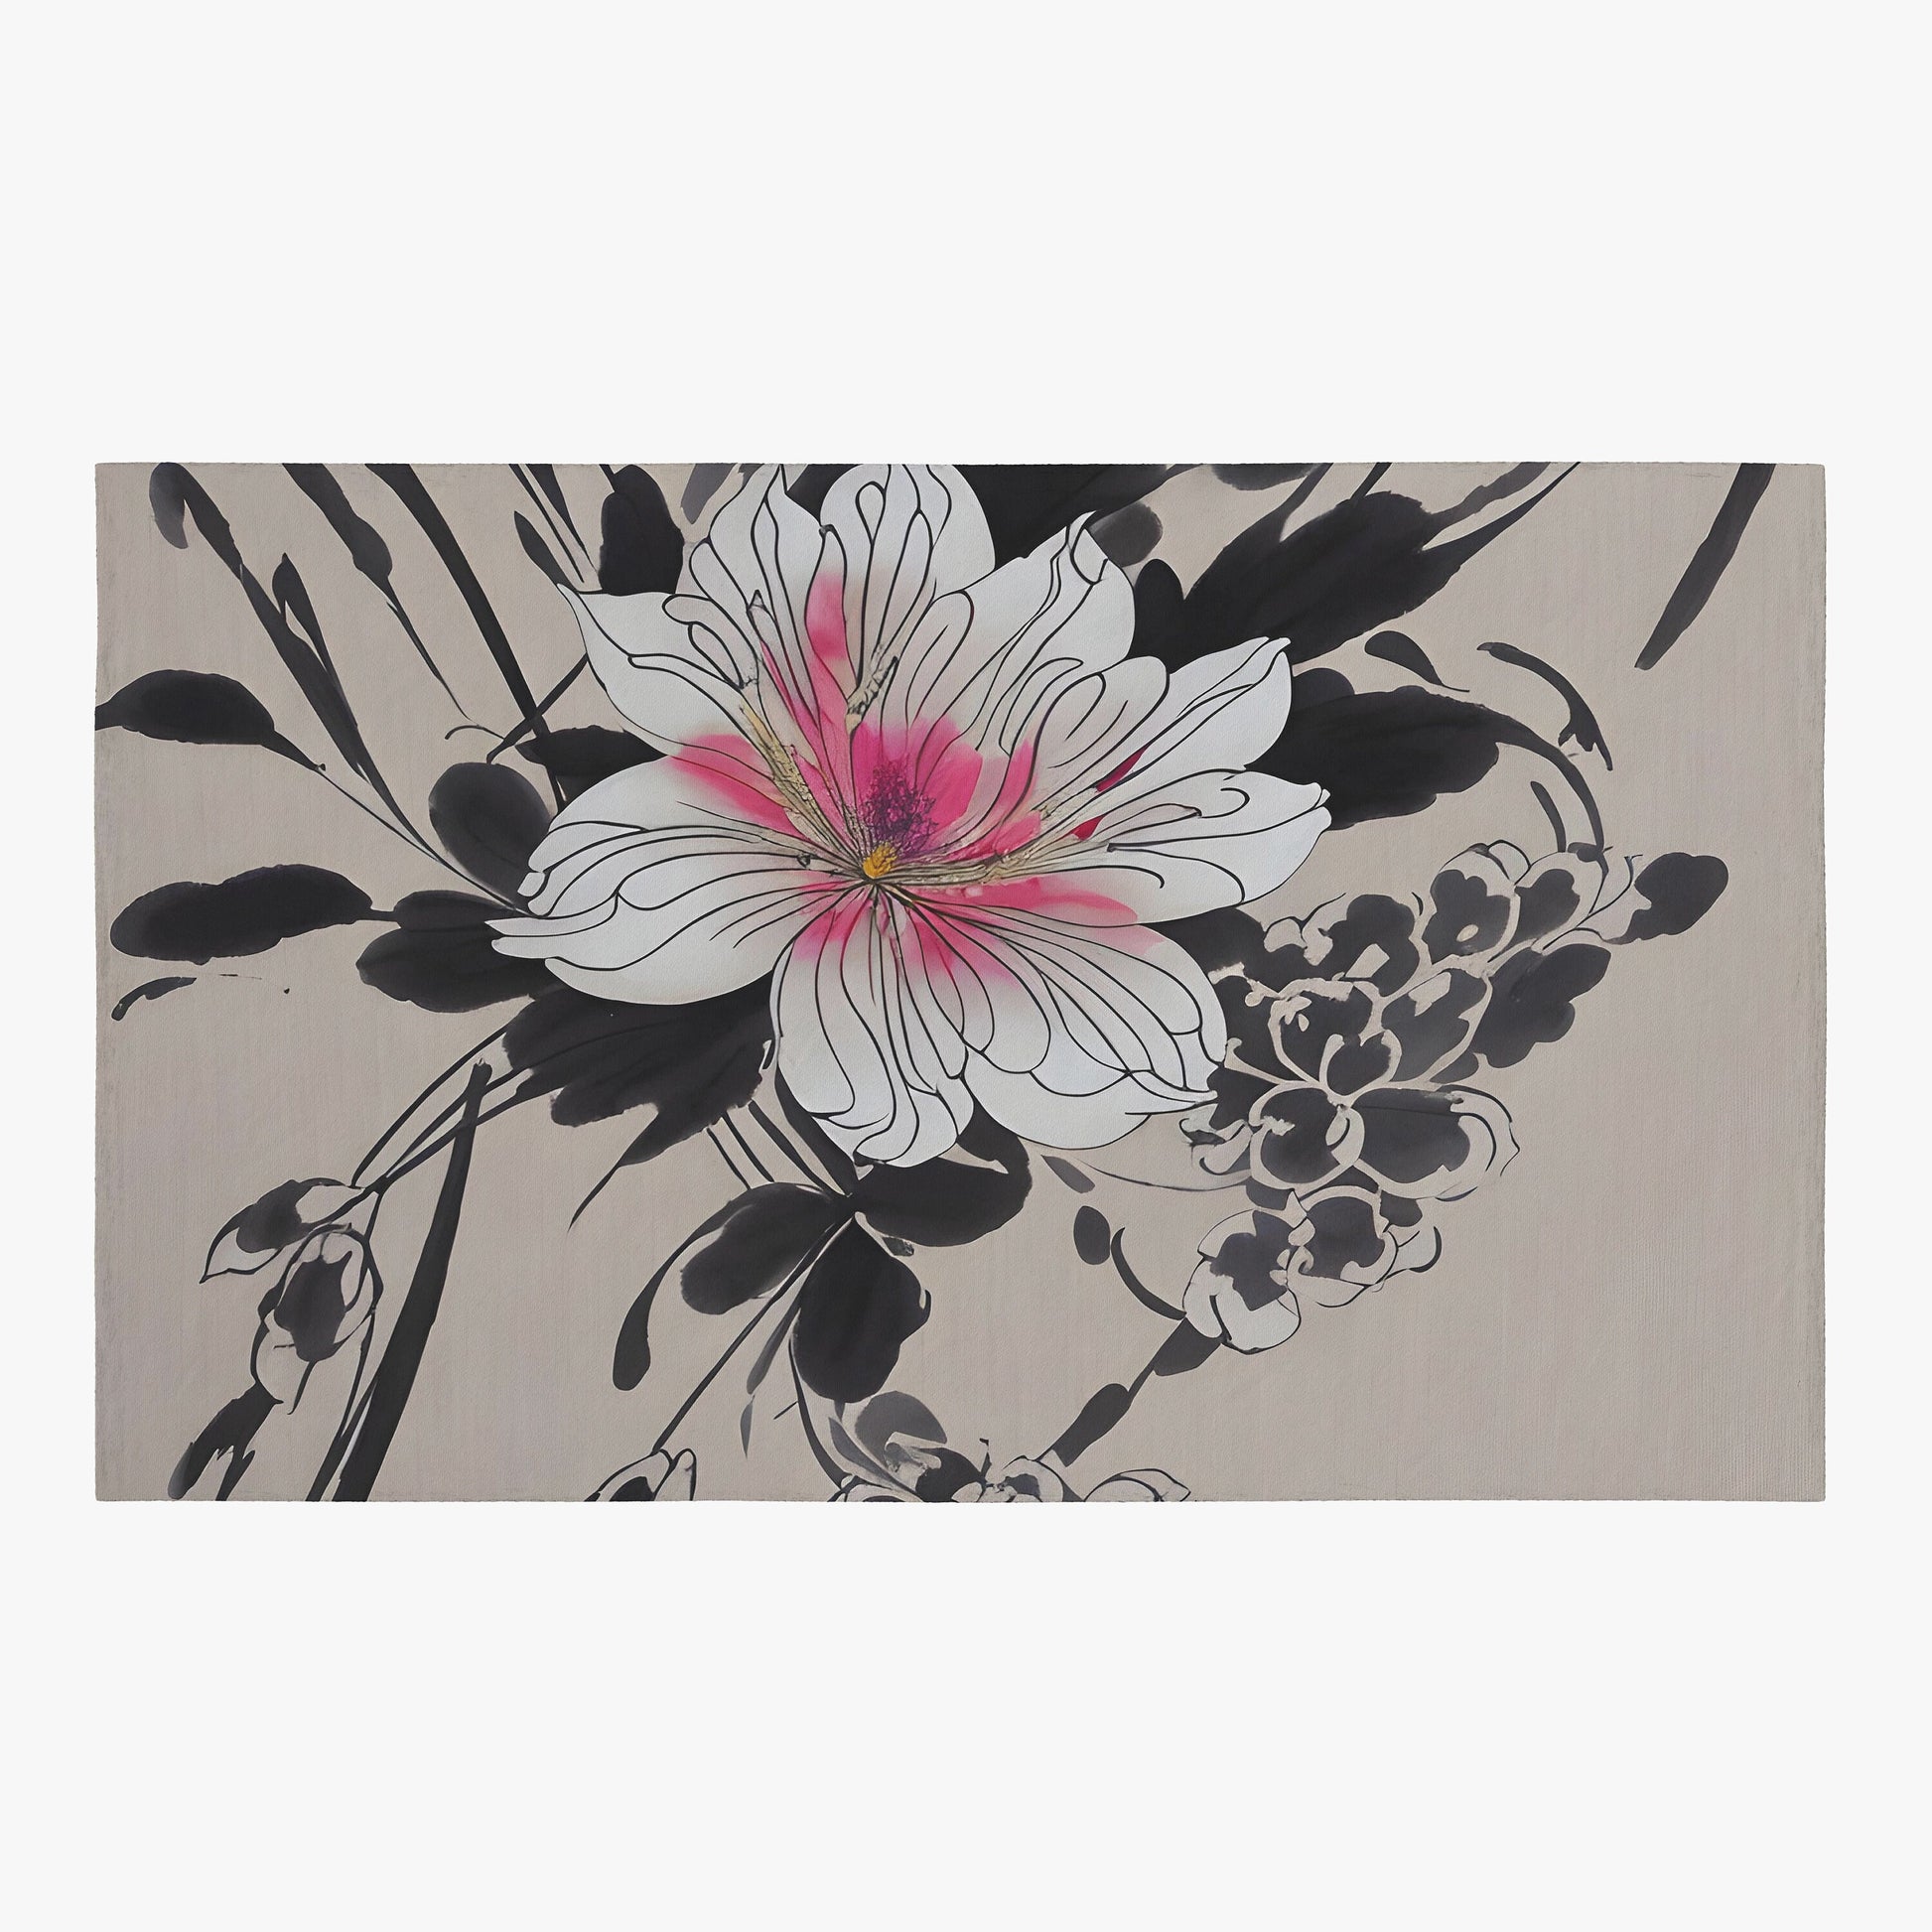 Floral Rug Japanese art Rug beige black pink Rug flower Floor Rug 3x5 4x6 5x7 8x10 Large oriental art rug